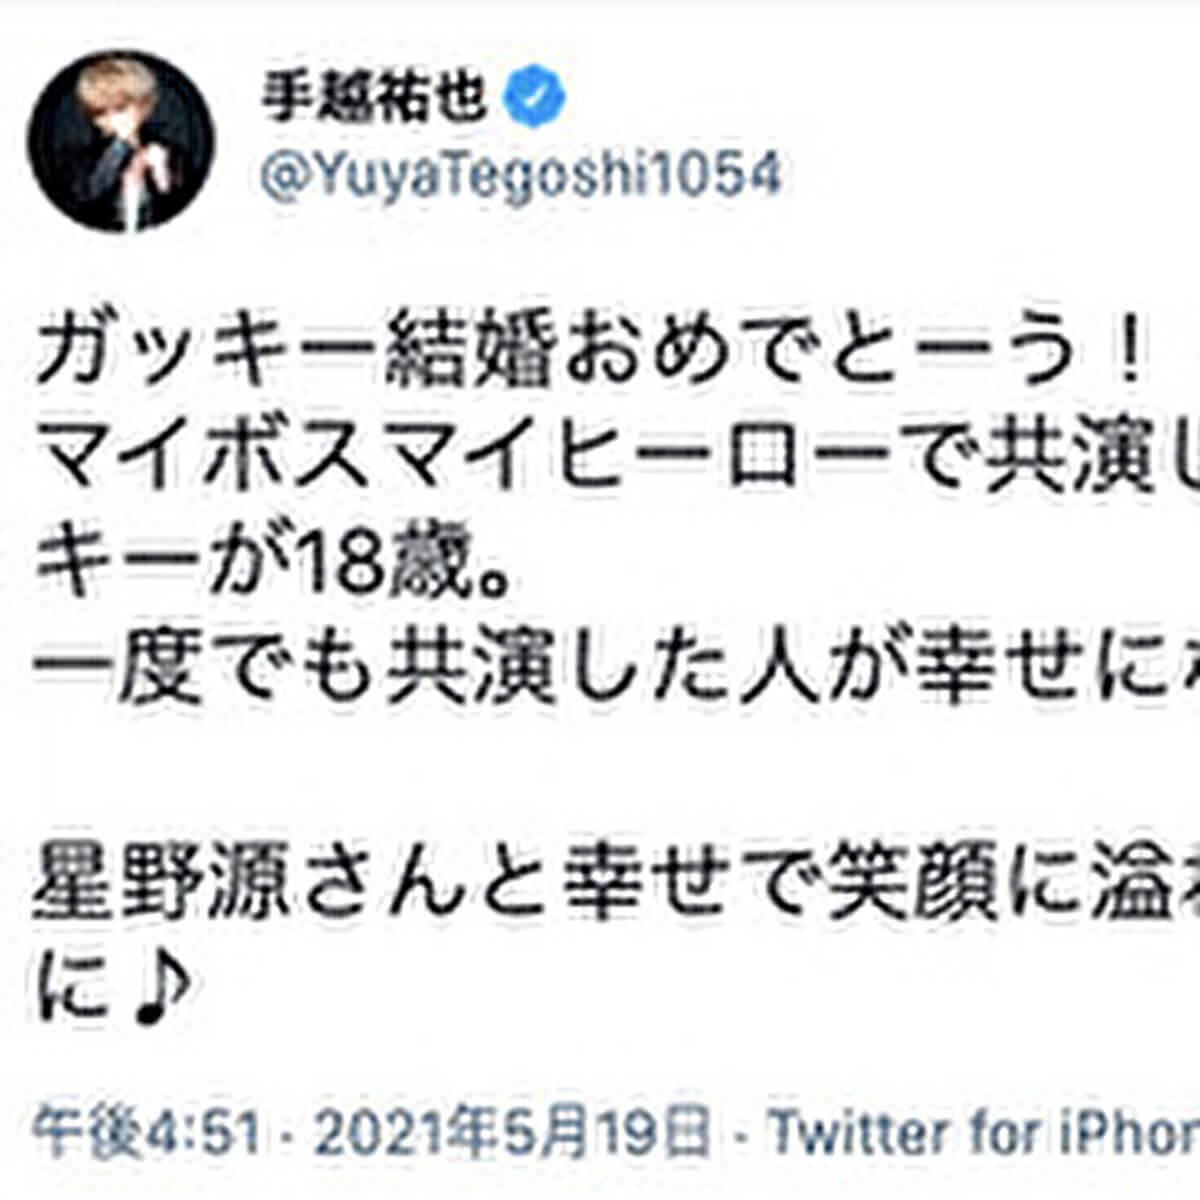 桐山照史と3年愛報道の狩野舞子、過去ツイートに「マウント」と批判